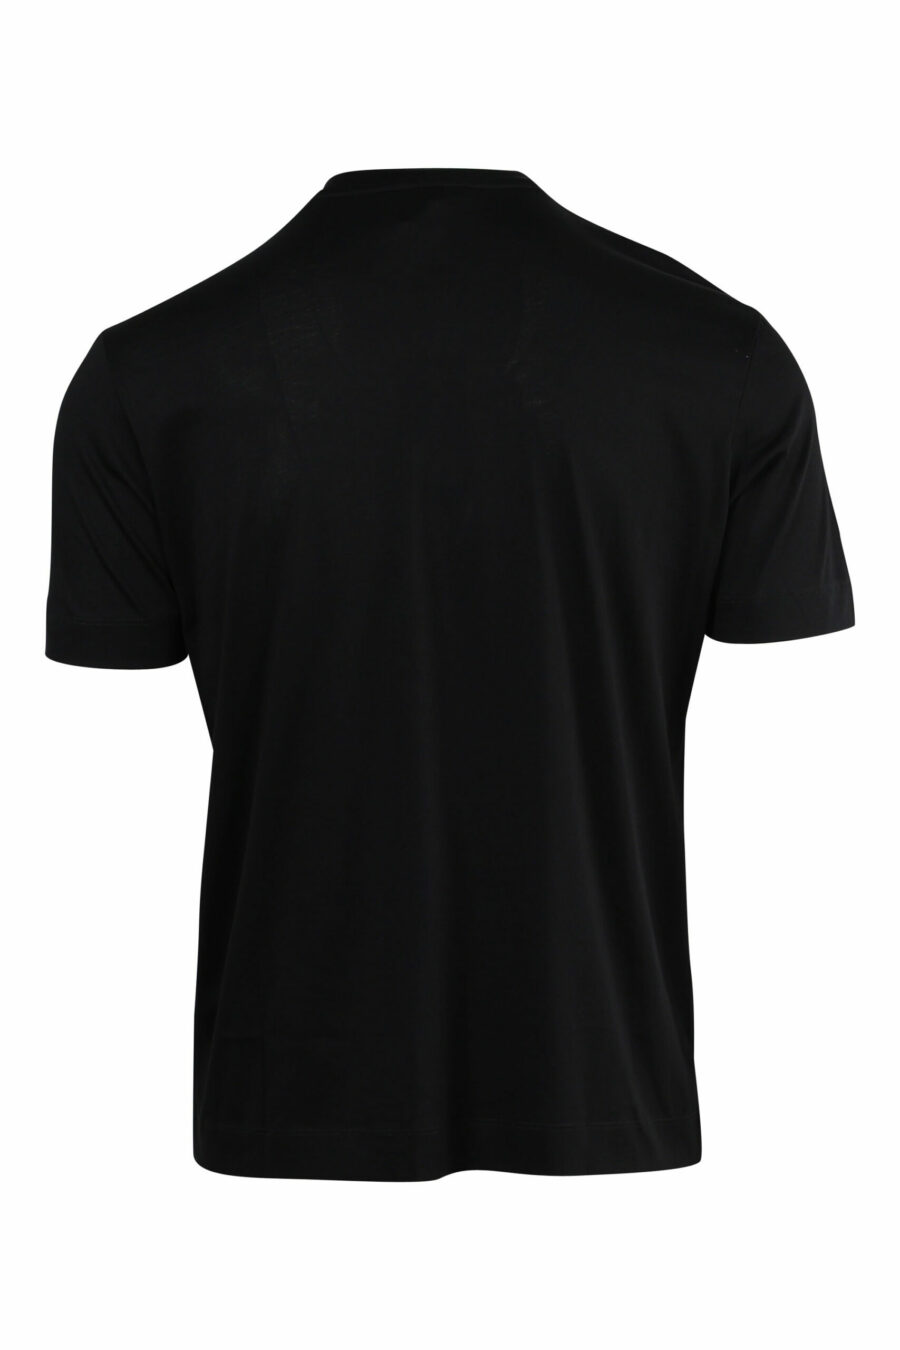 Black T-shirt with embossed eagle maxilogo - 8057970433729 1 scaled